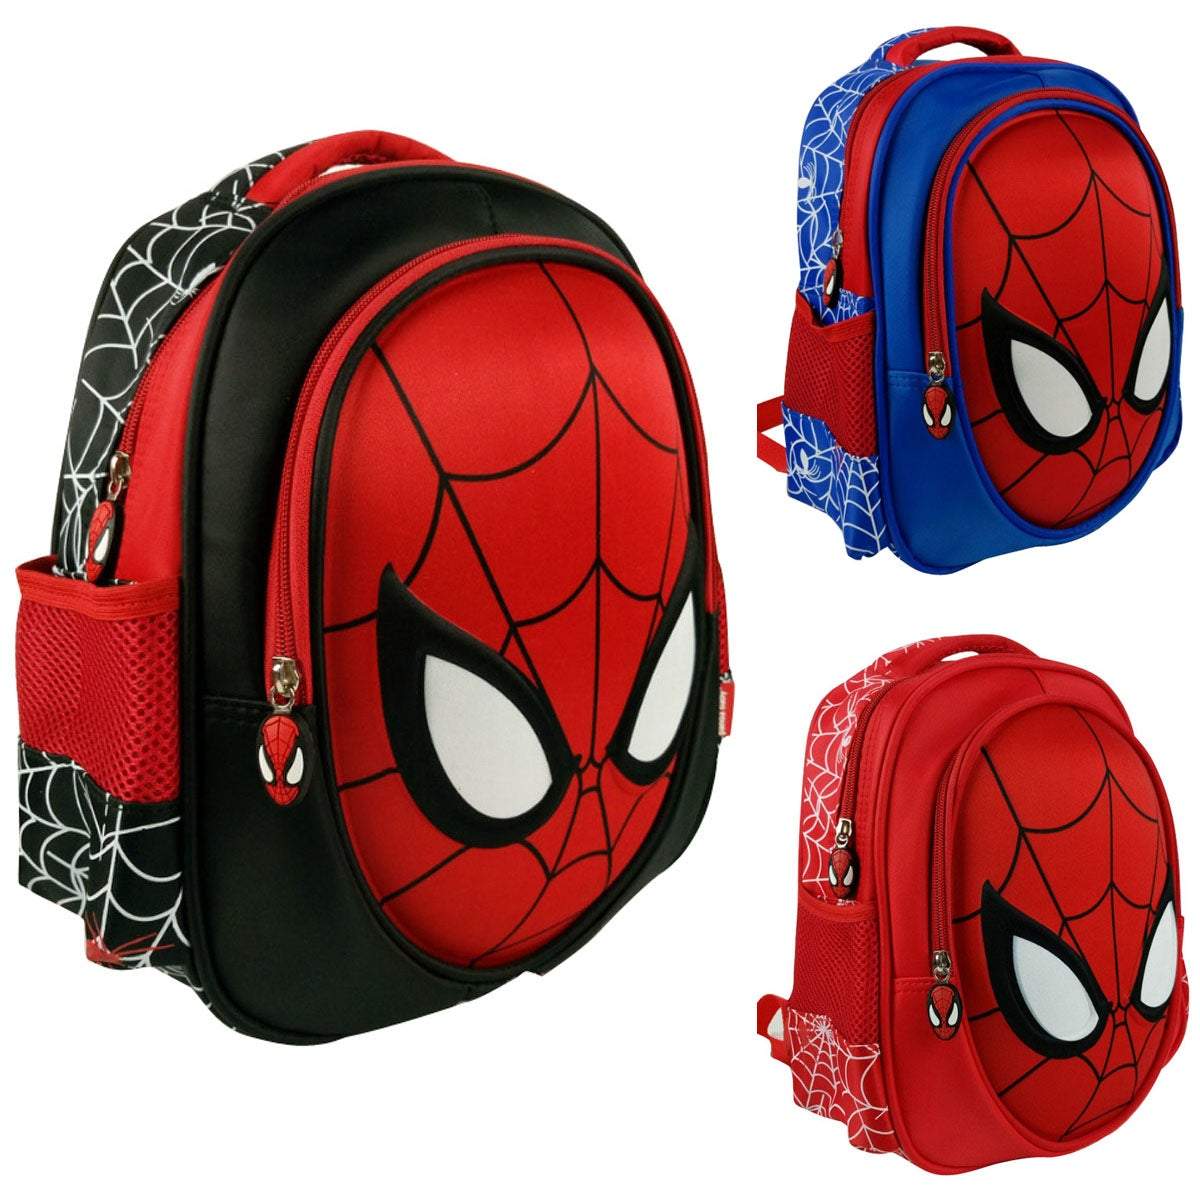 3D Spiderman Backpack School Bag Nursery Primary School Kids Bags